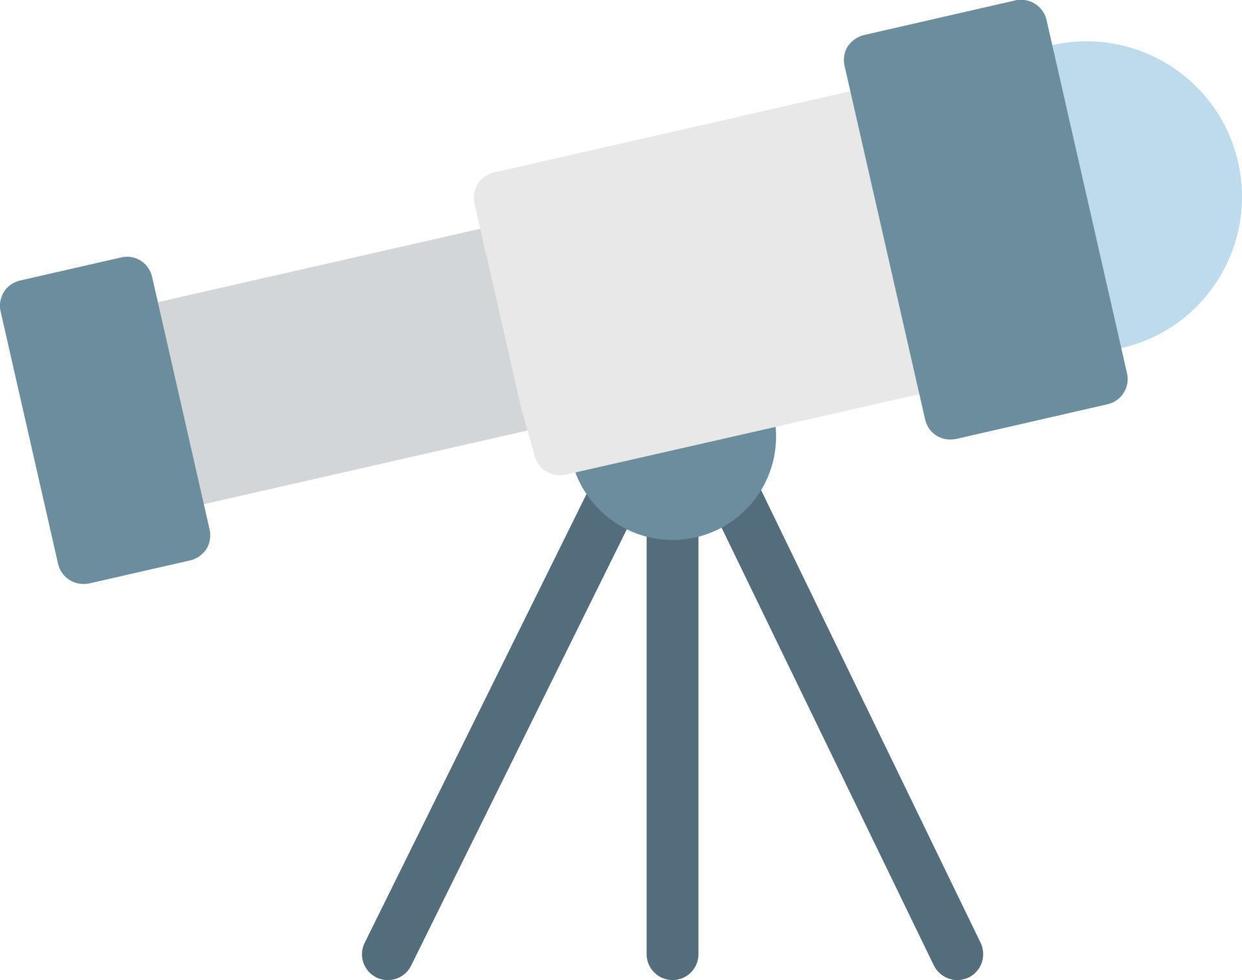 illustrazione vettoriale del telescopio su uno sfondo. simboli di qualità premium. icone vettoriali per il concetto e la progettazione grafica.